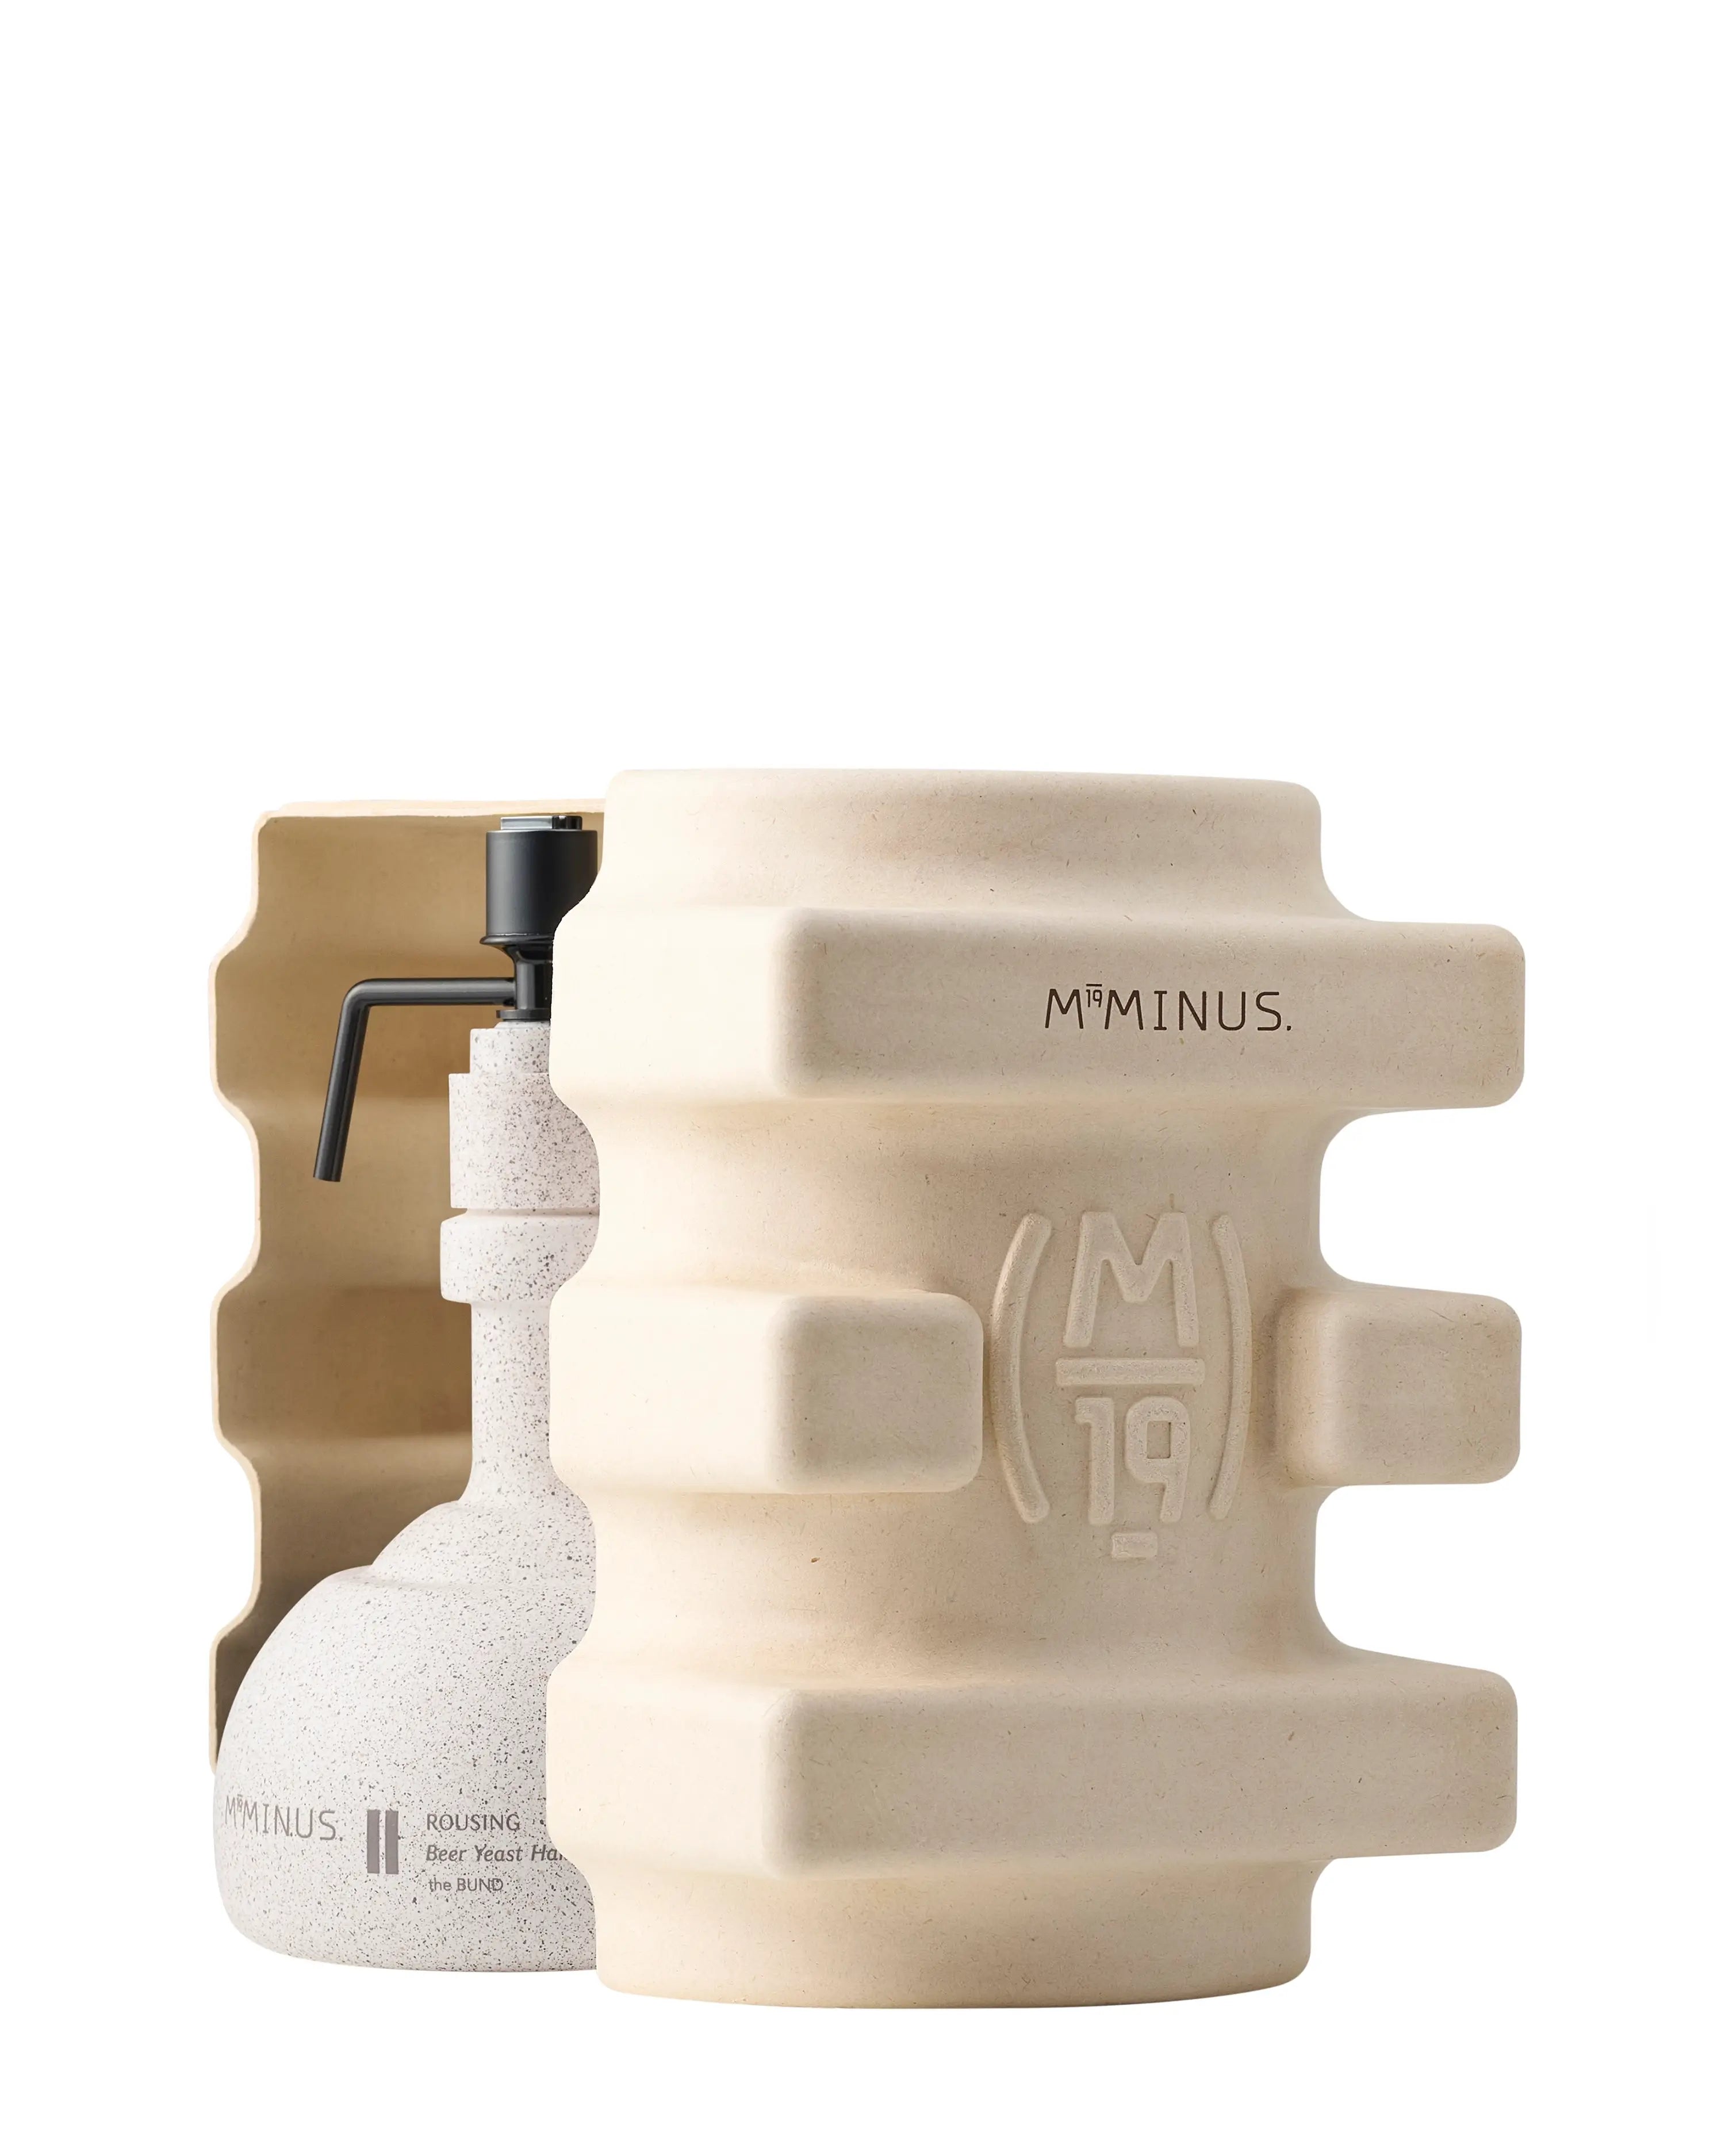 M19Minus the BUND -II Rousing Beer Yeast Hair Wrap - Conditioner